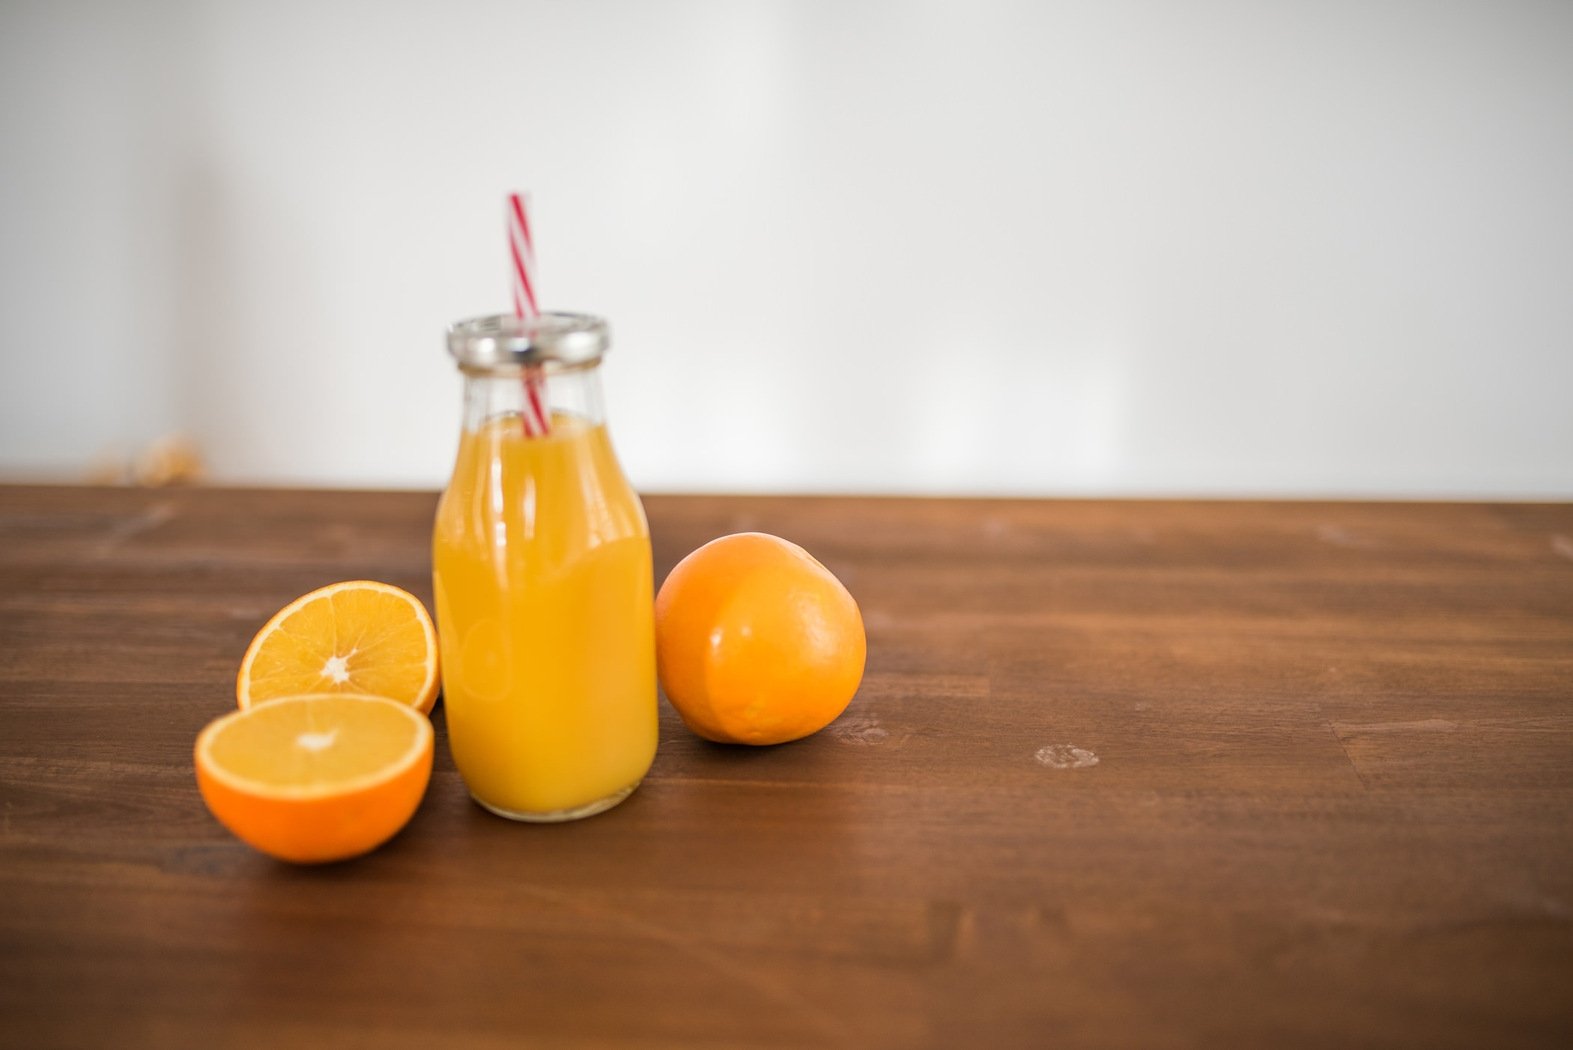 zumo de naranja recien exprimido